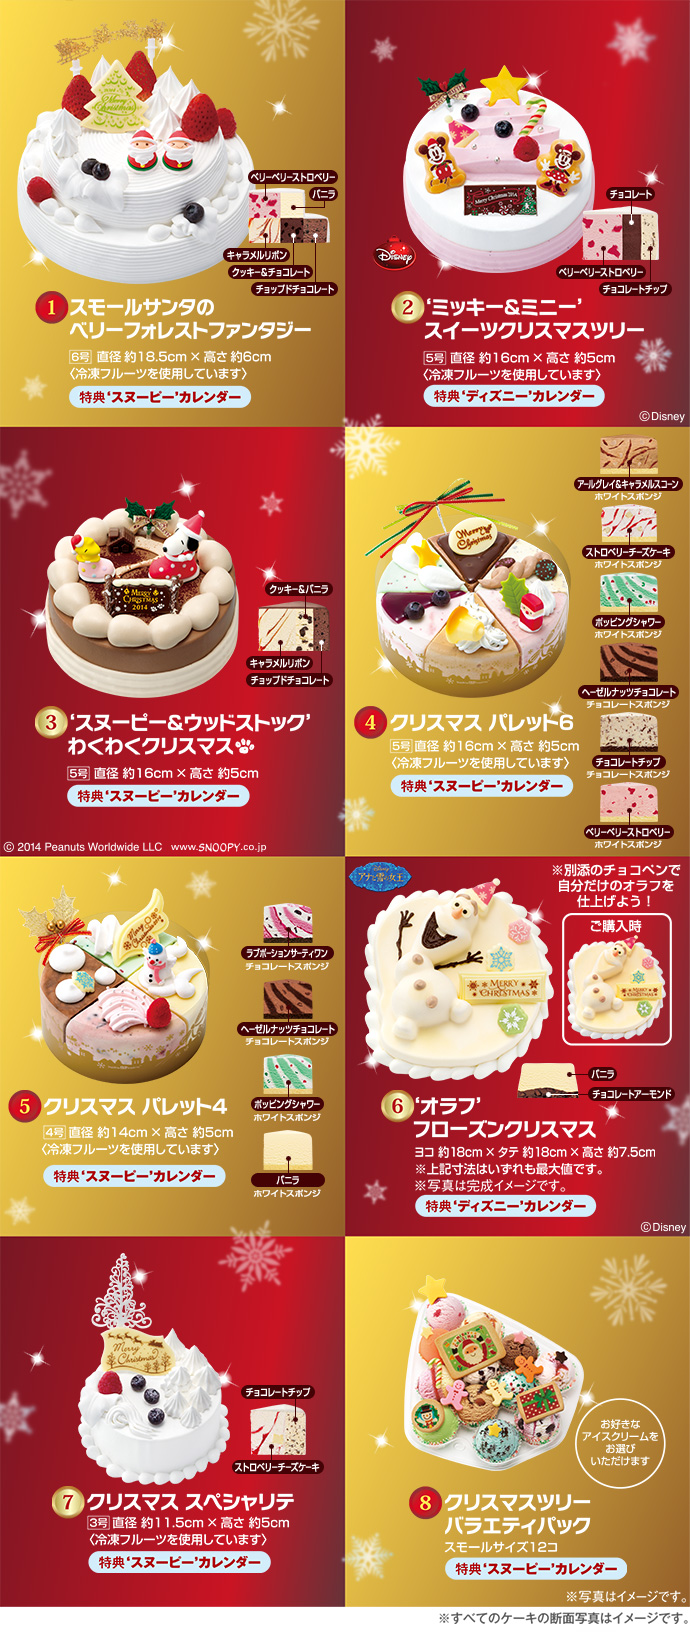 引っ張る 通訳 ずらす 31 アイス ケーキ 値段 クリスマス Precious Warabi Jp